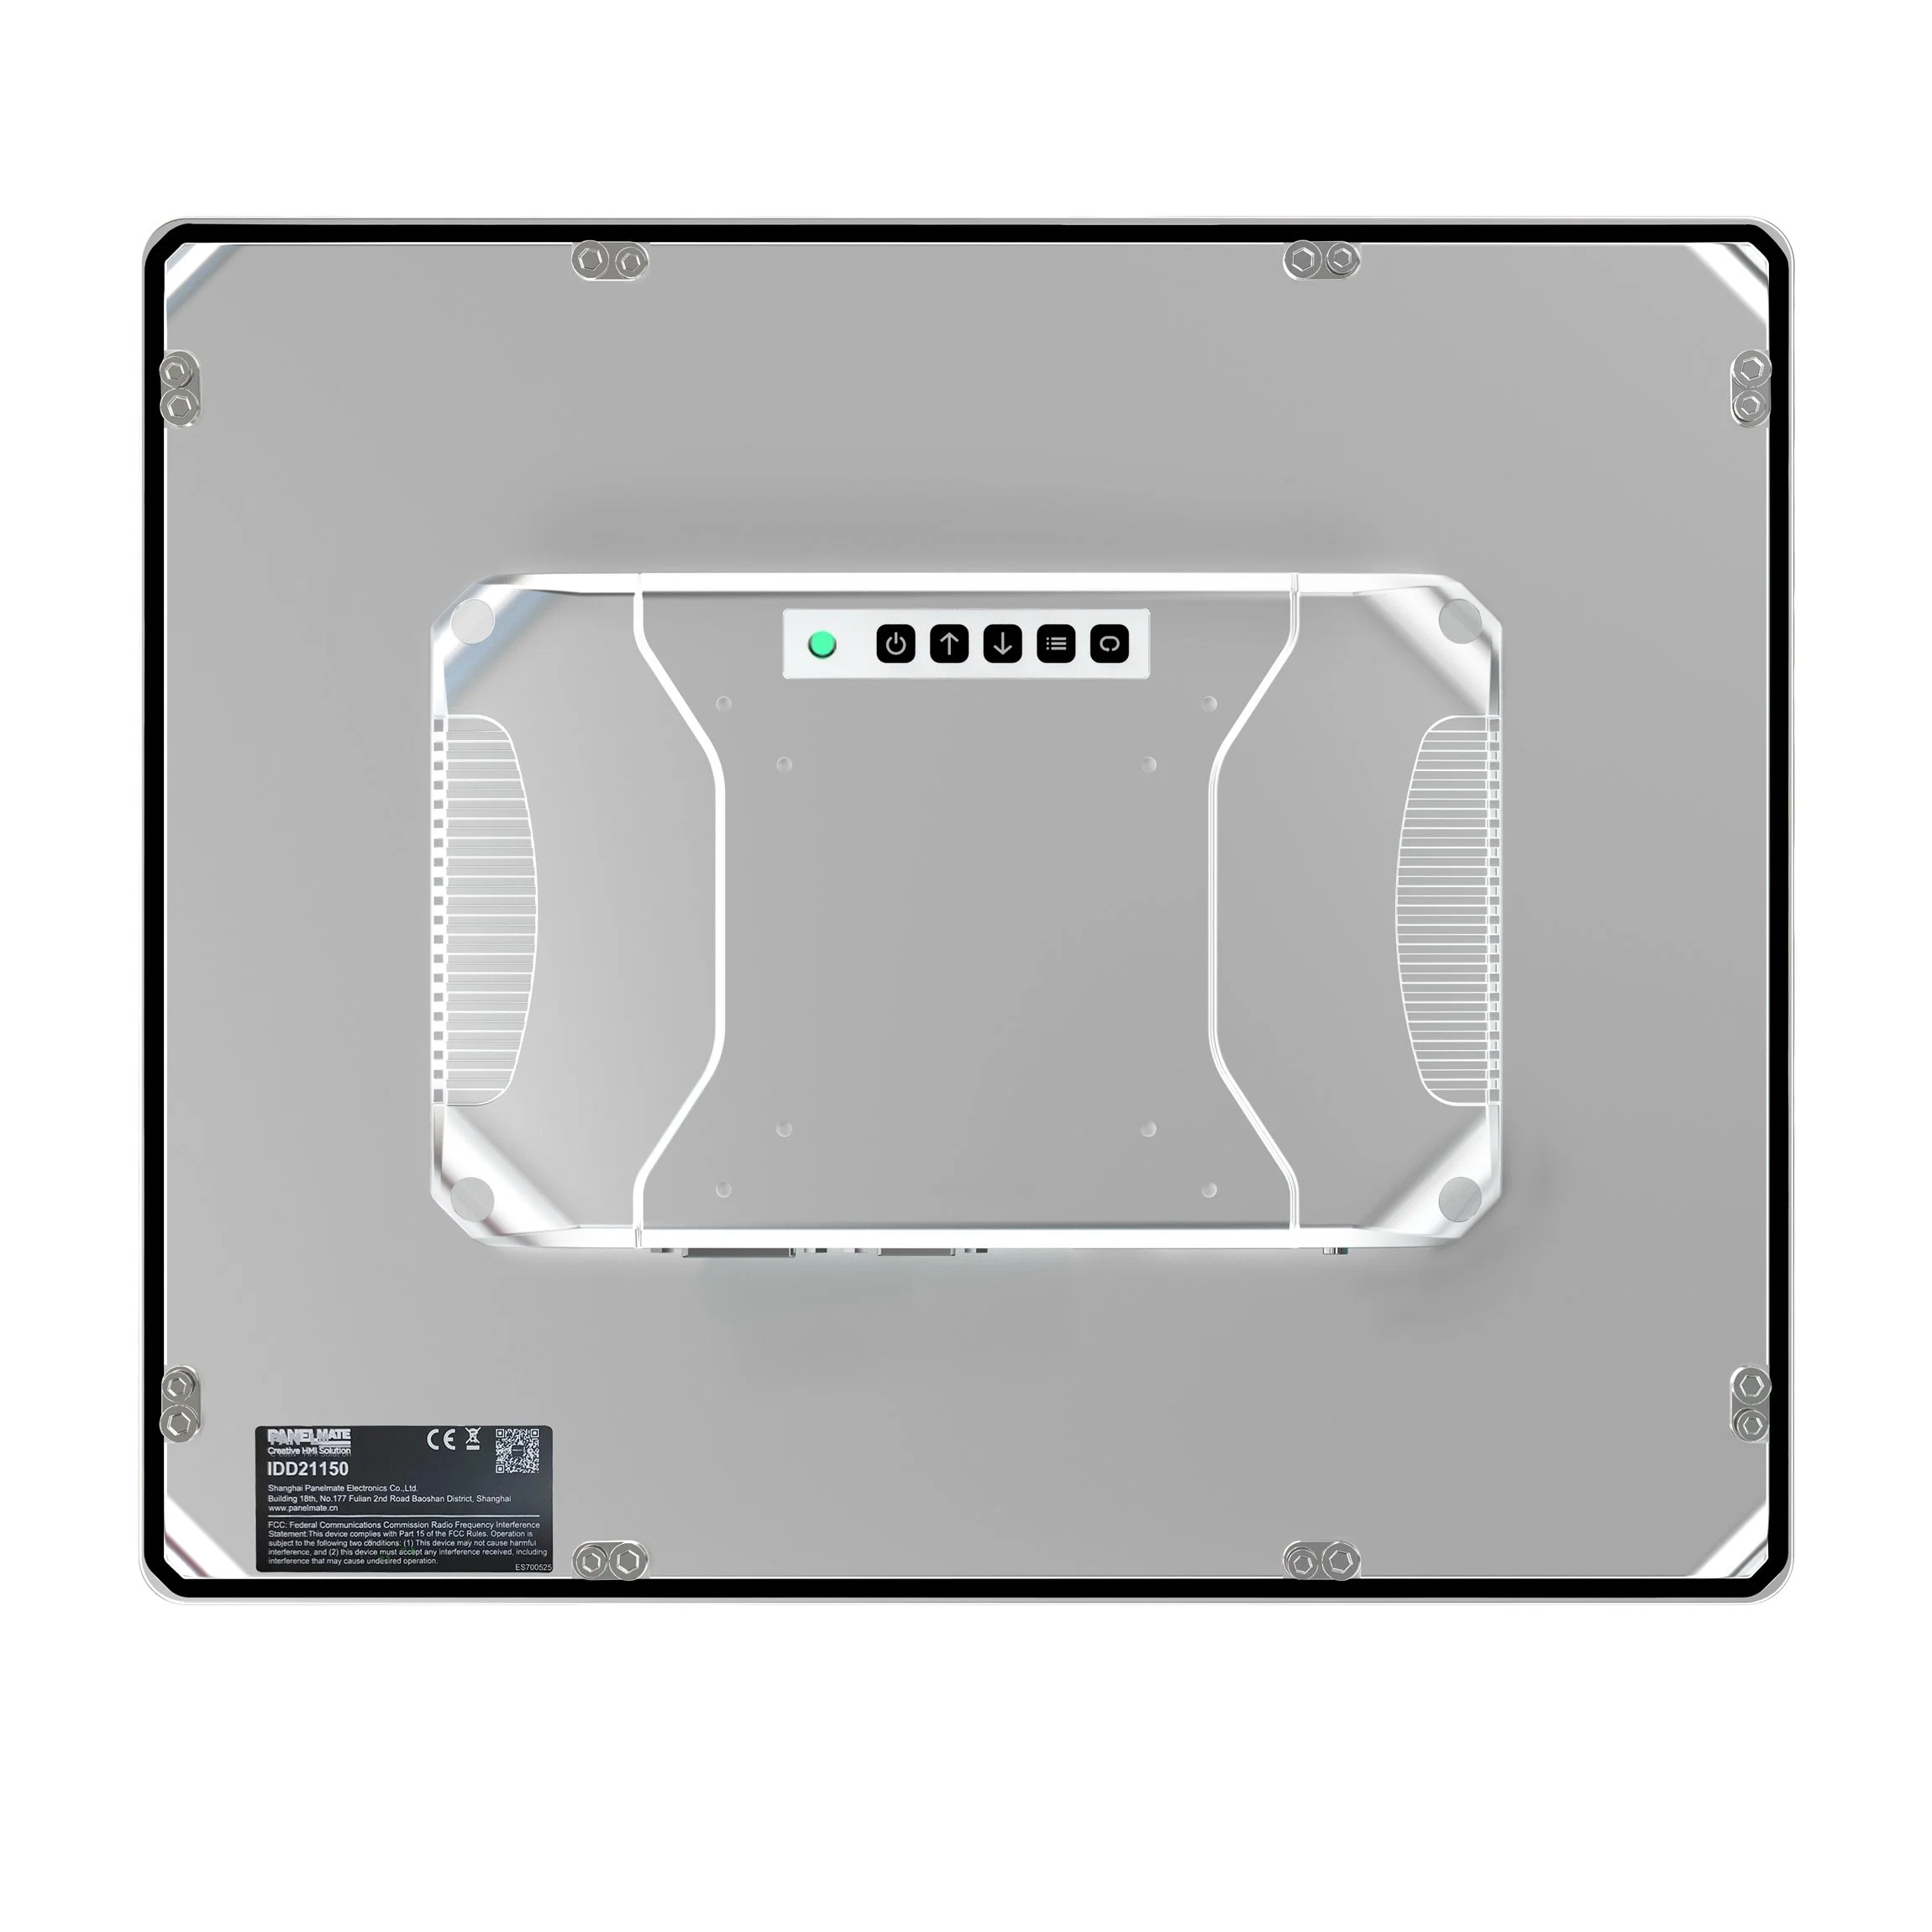 vidrio templado de 15 pulgadas de pantalla no táctil resistente al agua IP65&amp;Monitor de Panel Industrial resistente al polvo